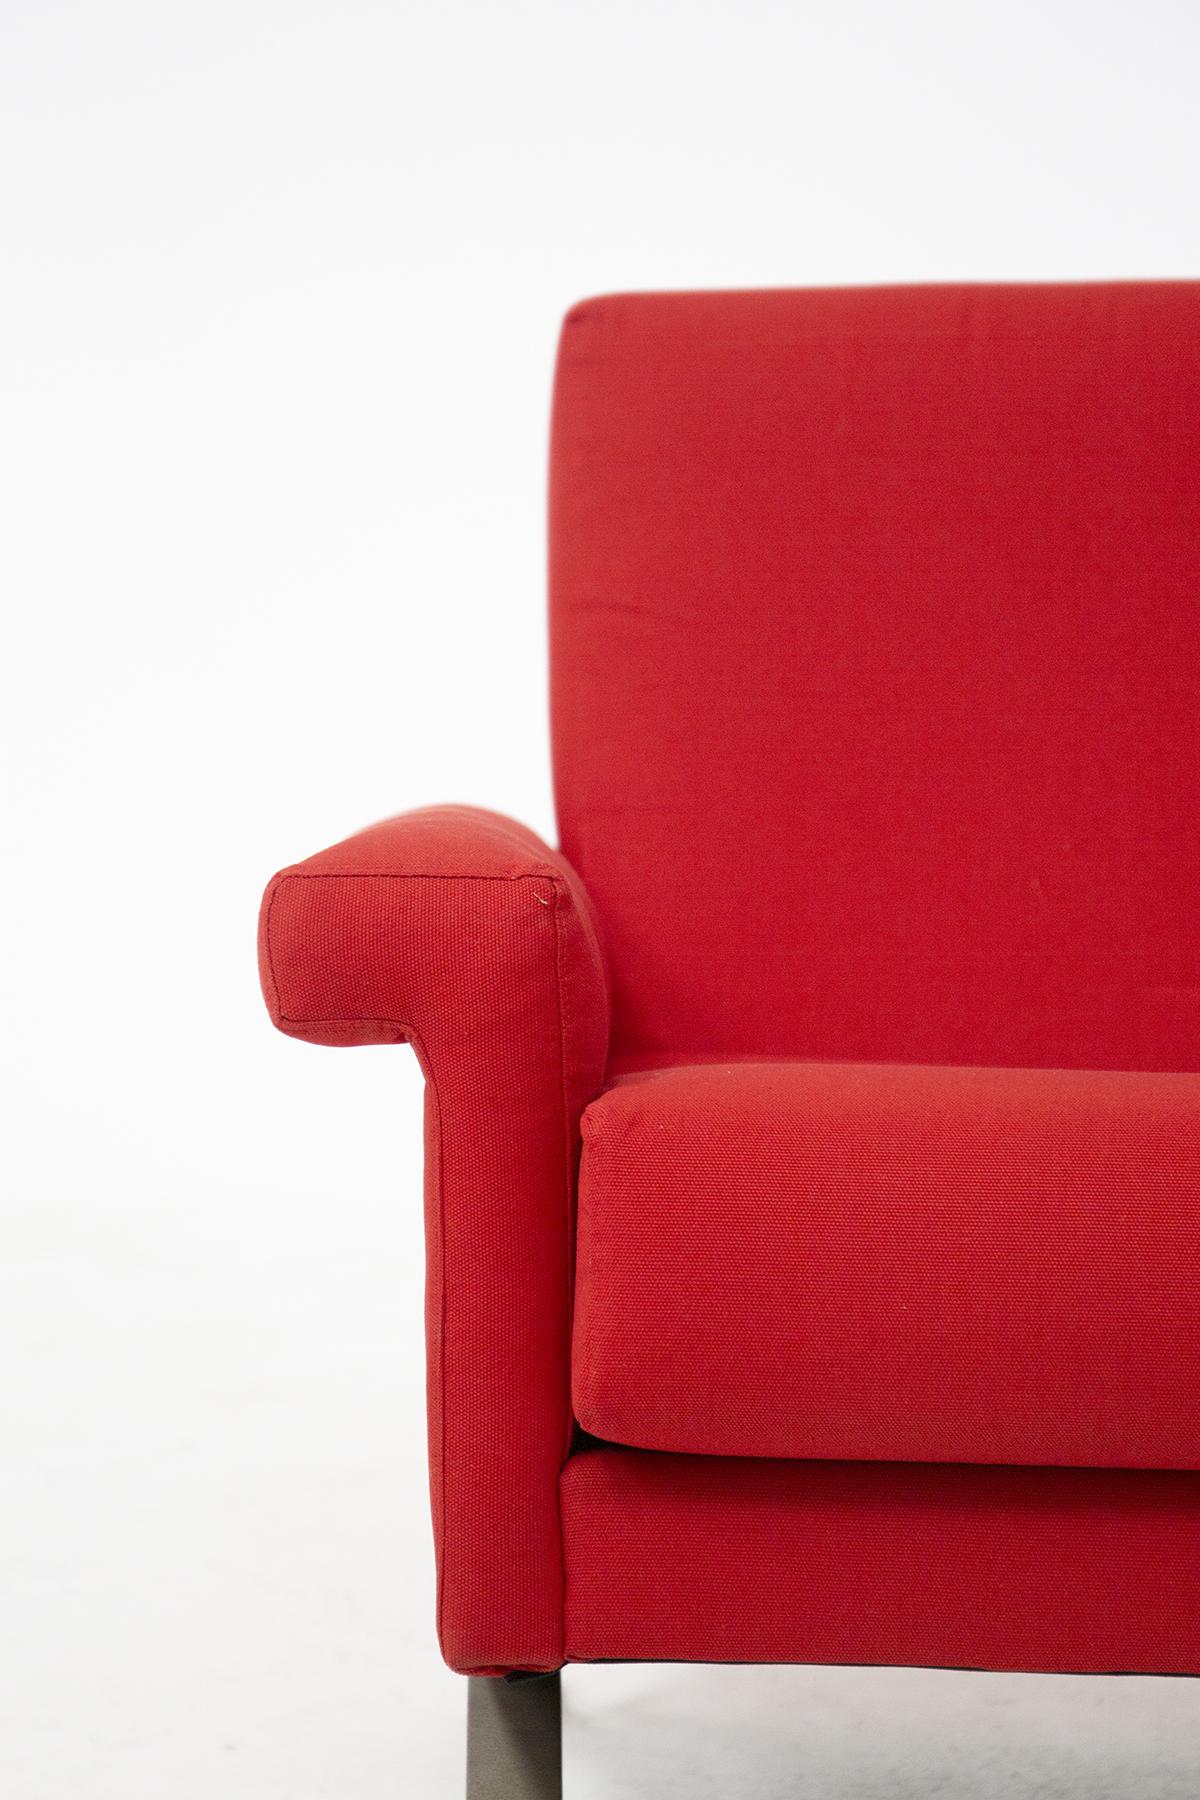 Rare canapé quatre places par Ico Parisi pour Cassina modèle 875 des années 60. La structure est en métal, et la couverture est en tissu de coton rouge. Le canapé à travers les lignes épurées et définies très rigoureux, femme simplicité et le